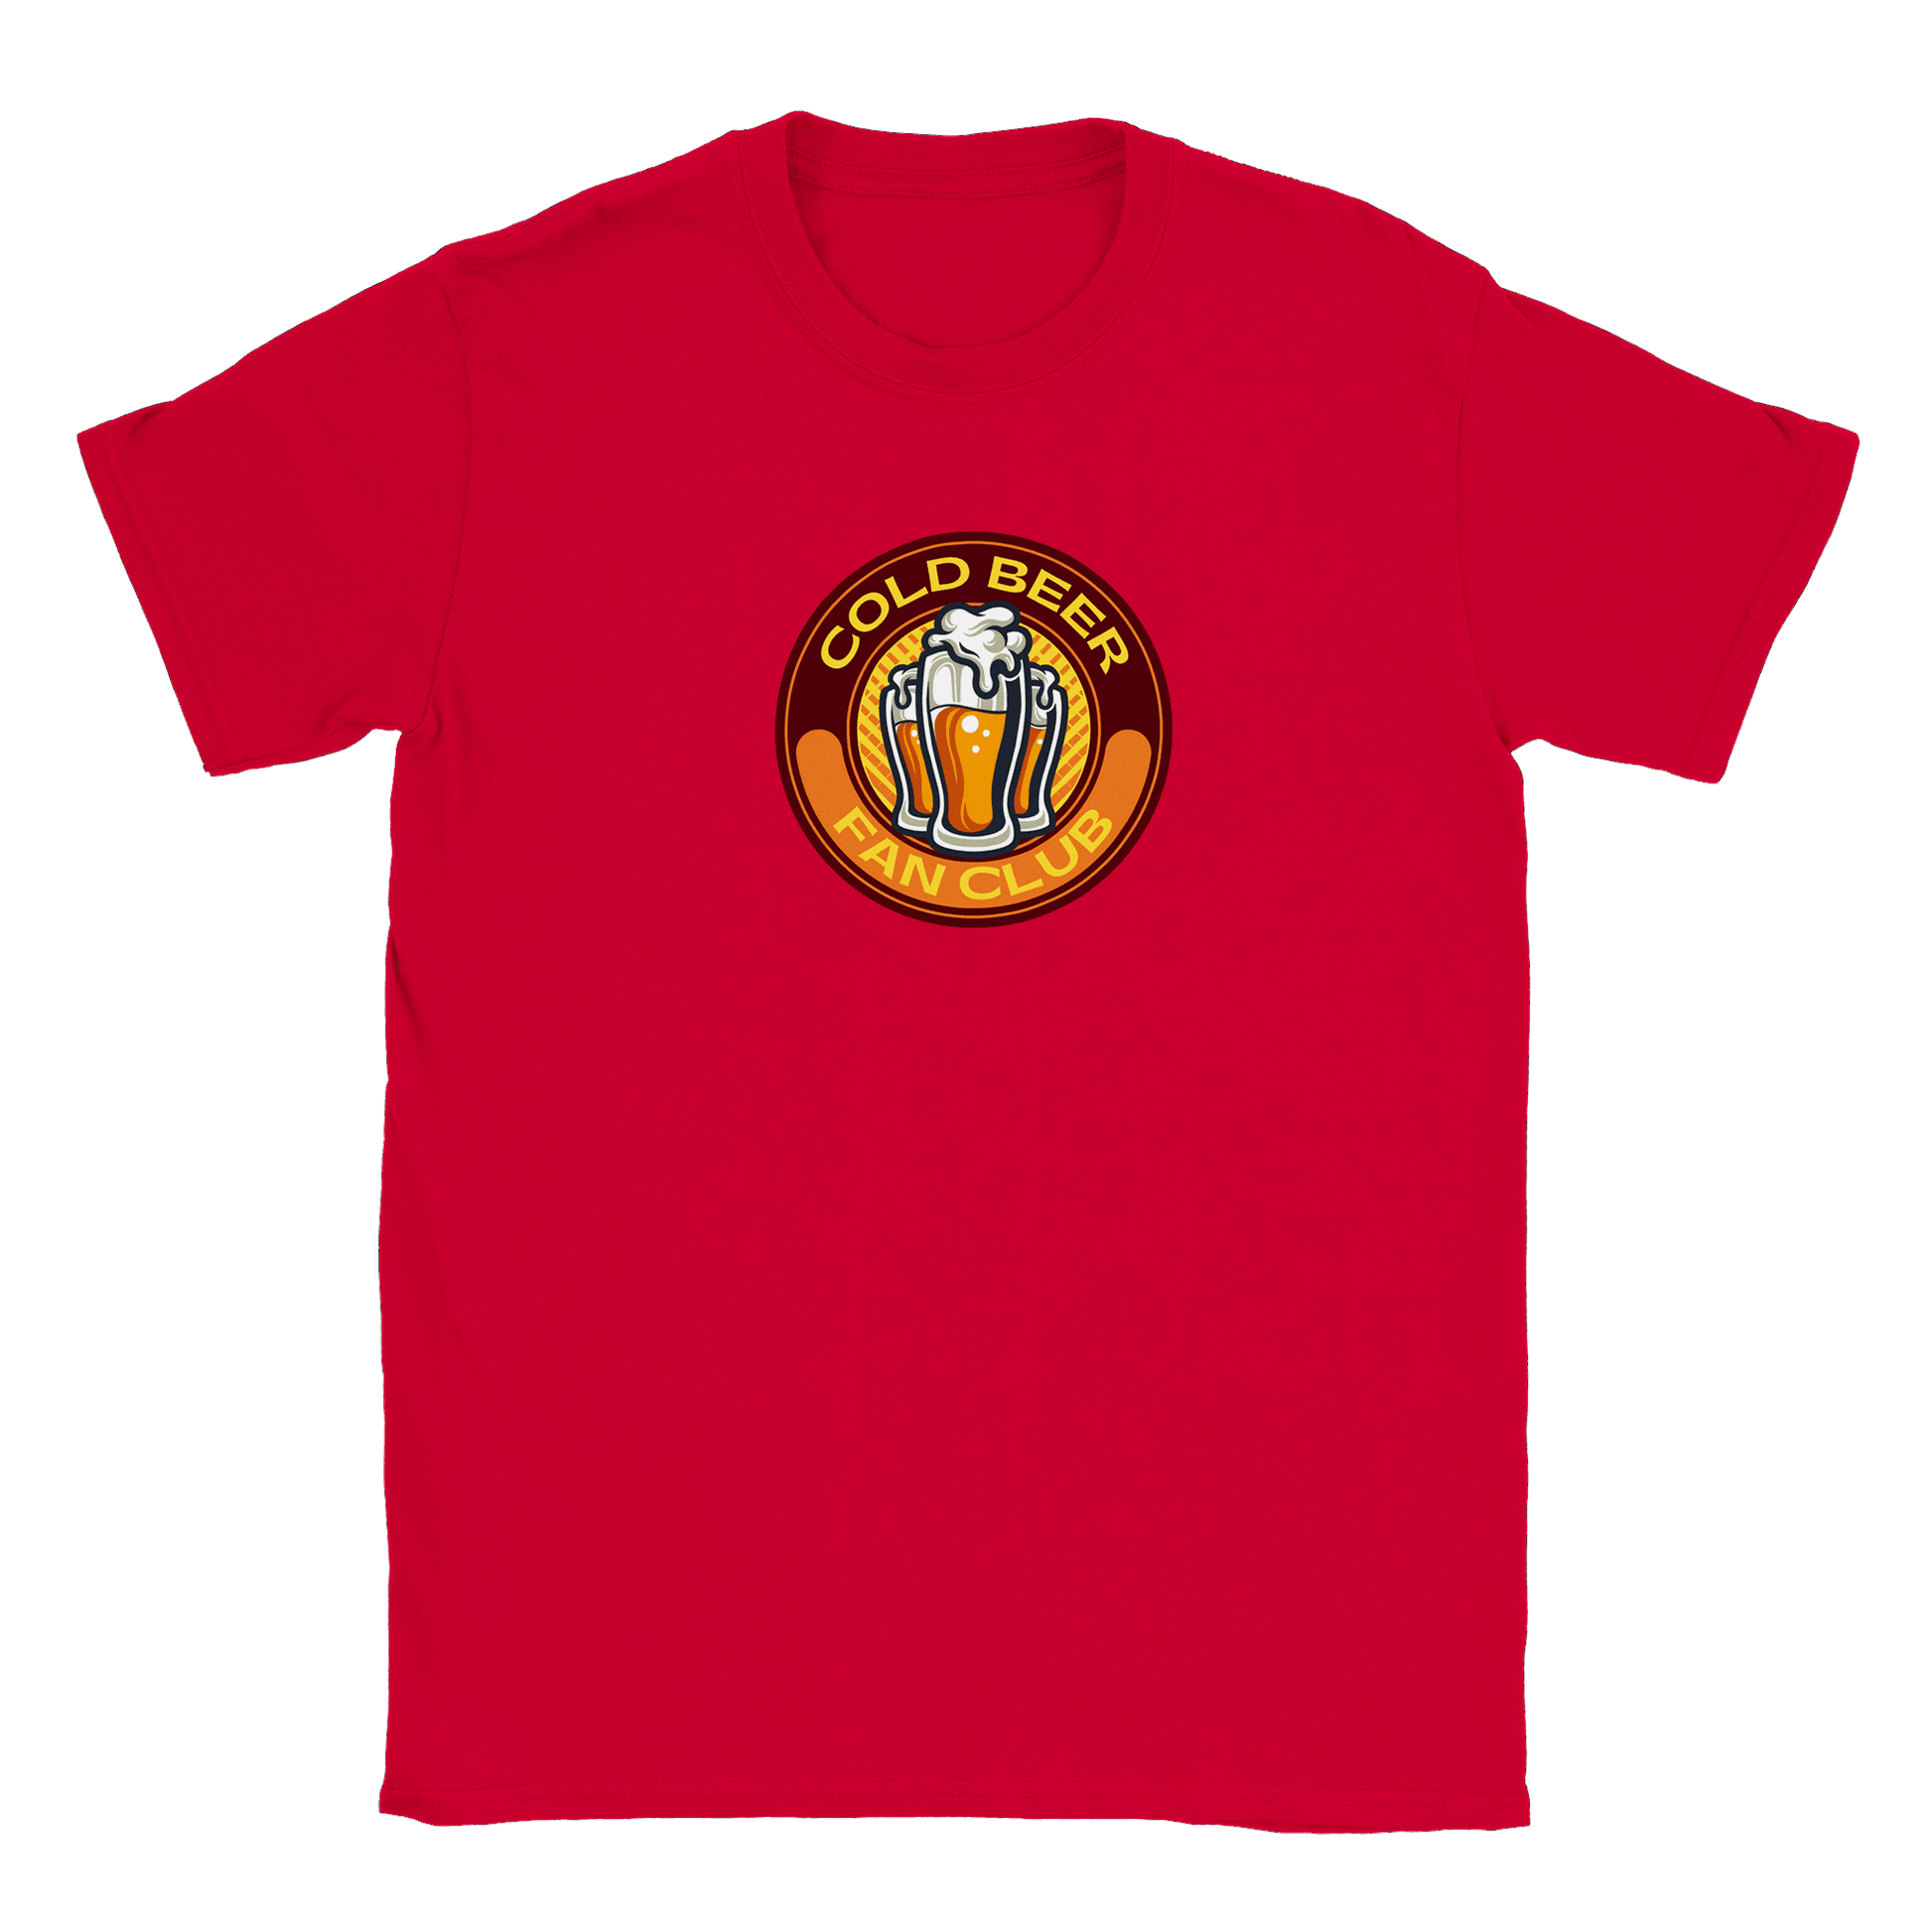 Cold Beer Fan Club - T-shirt Röd